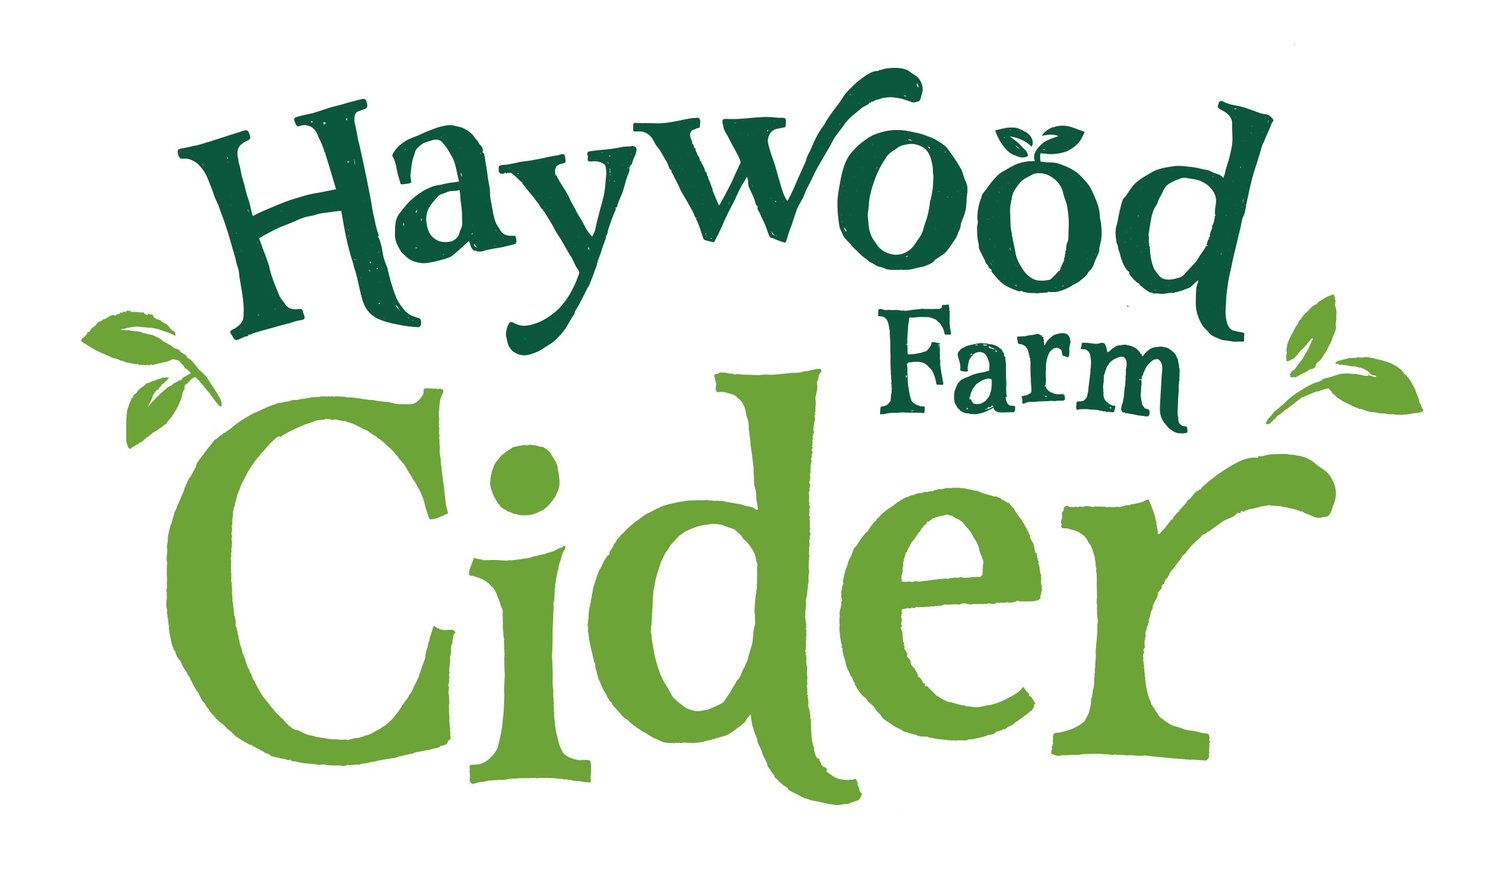 Haywood Farm Cider traditional Cornish still cider